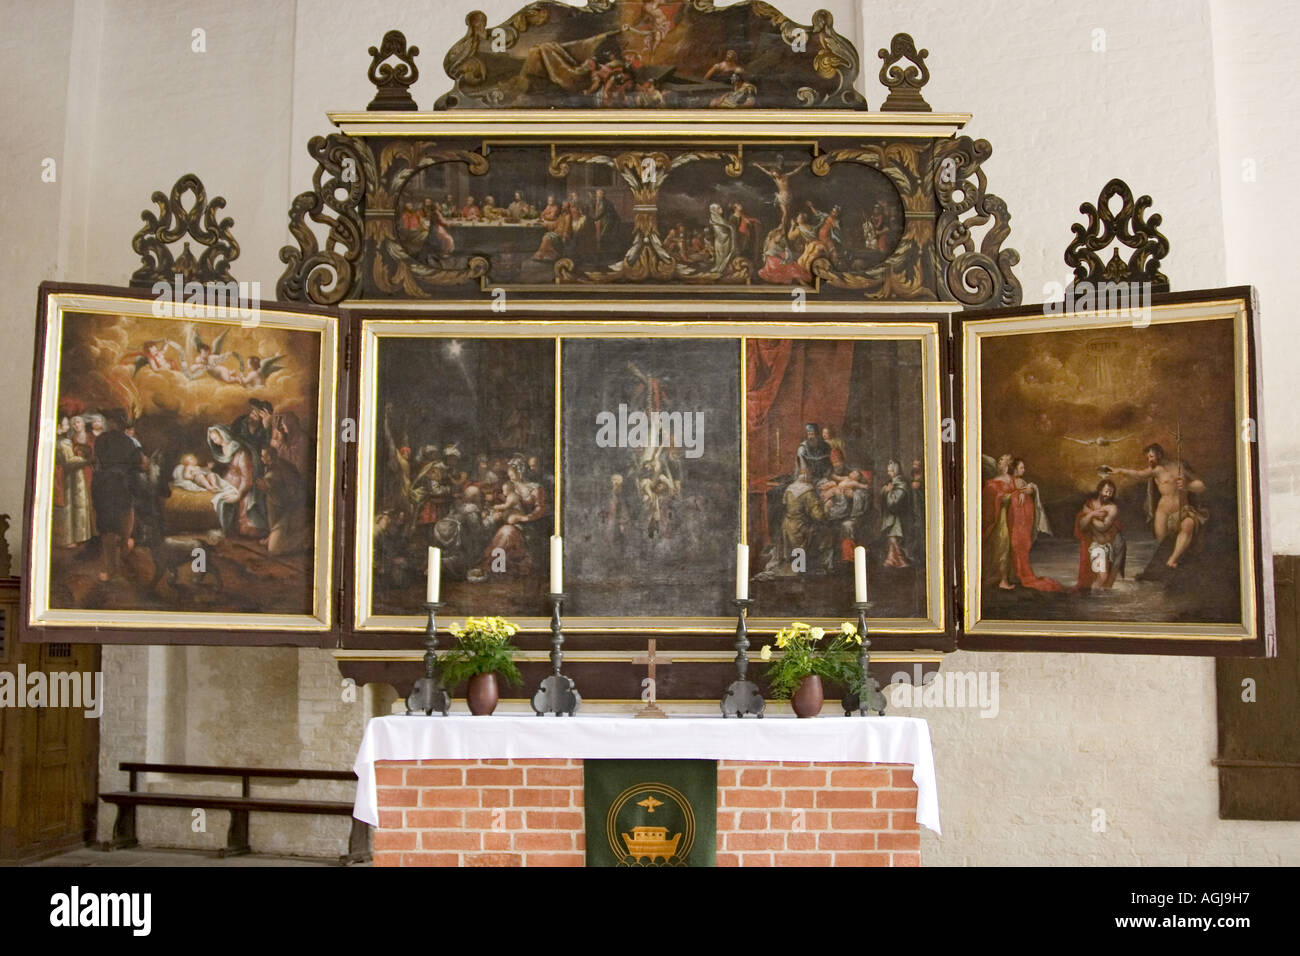 germany mecklenburg vorpommern indoor view of the heiligen geist kirche in the oldtown of wismar Stock Photo